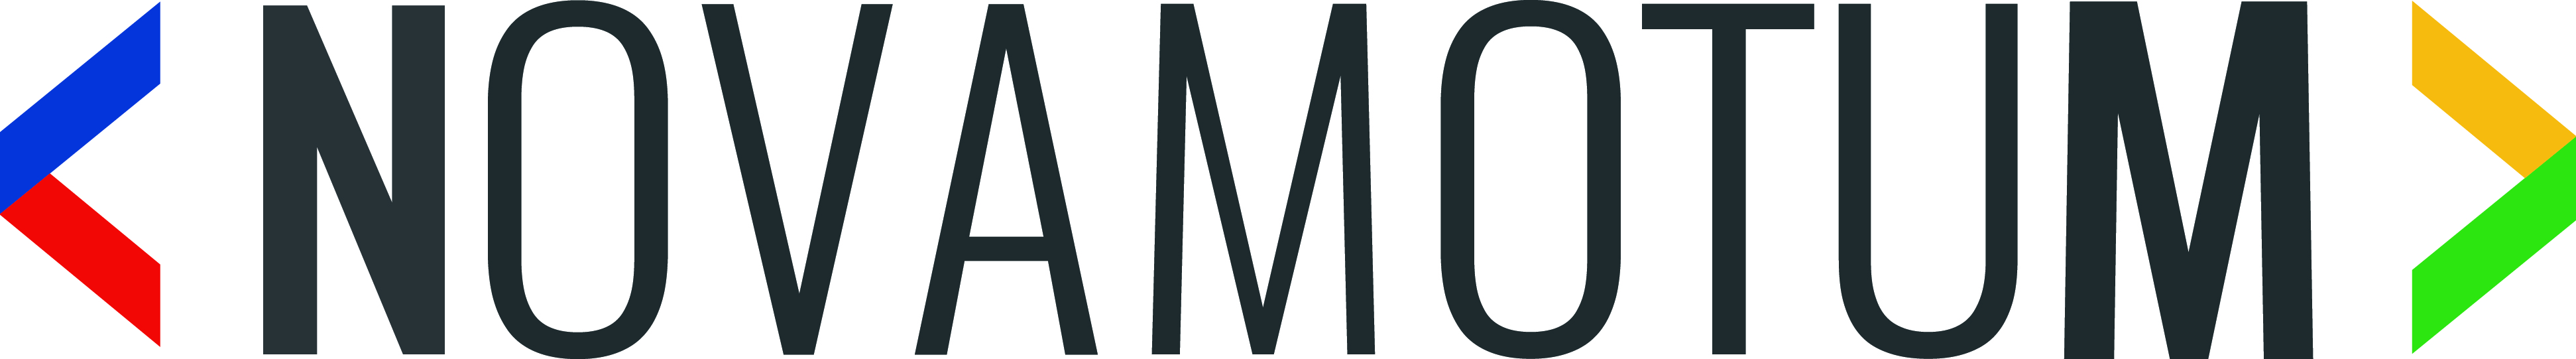 Logo novamotum.jpg